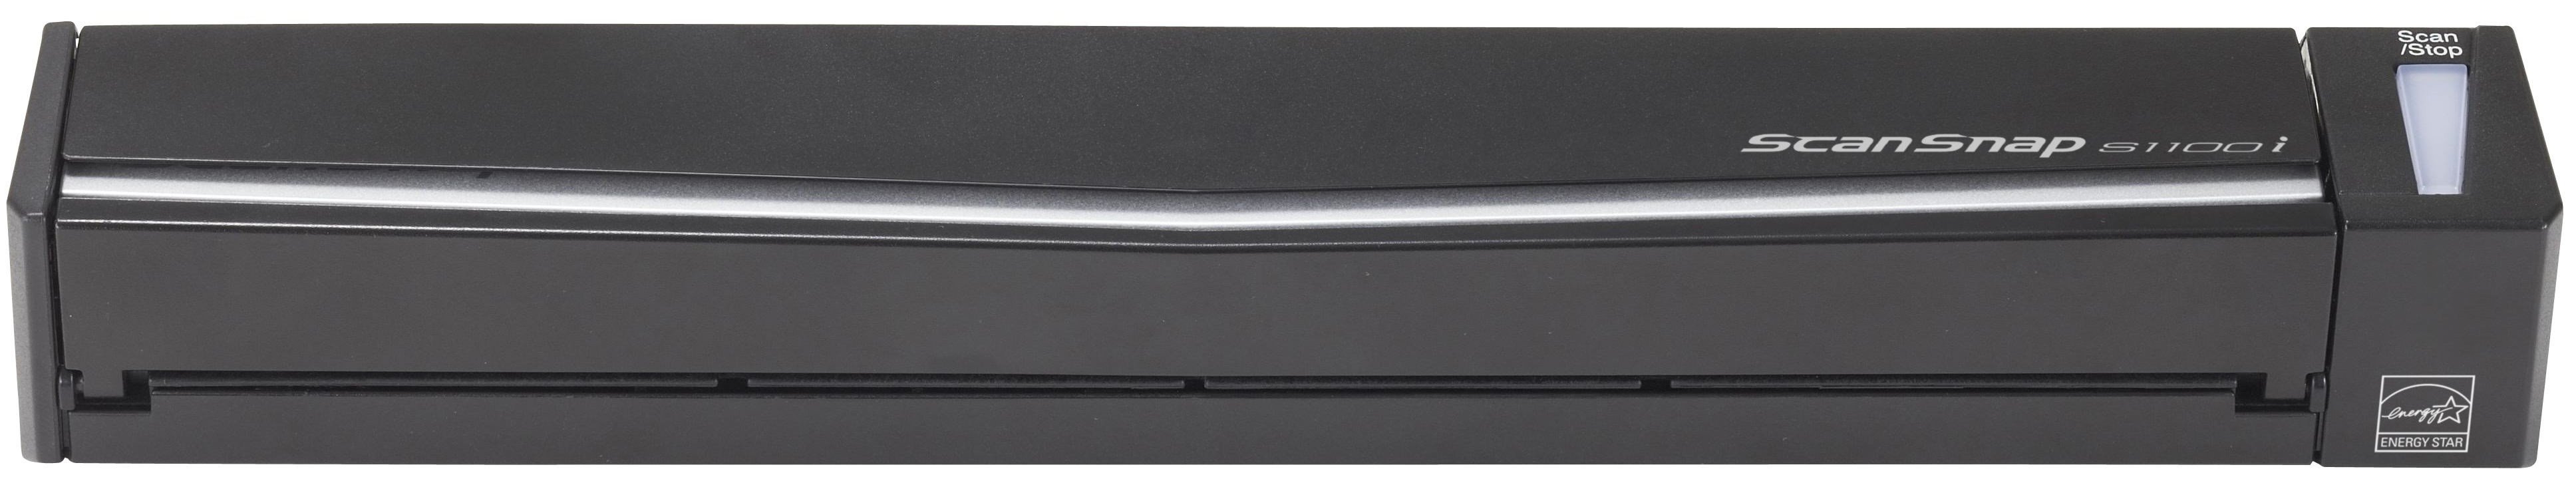  Документ-сканер A4 Fujitsu ScanSnap S1100i (PA03610-B101) фото1